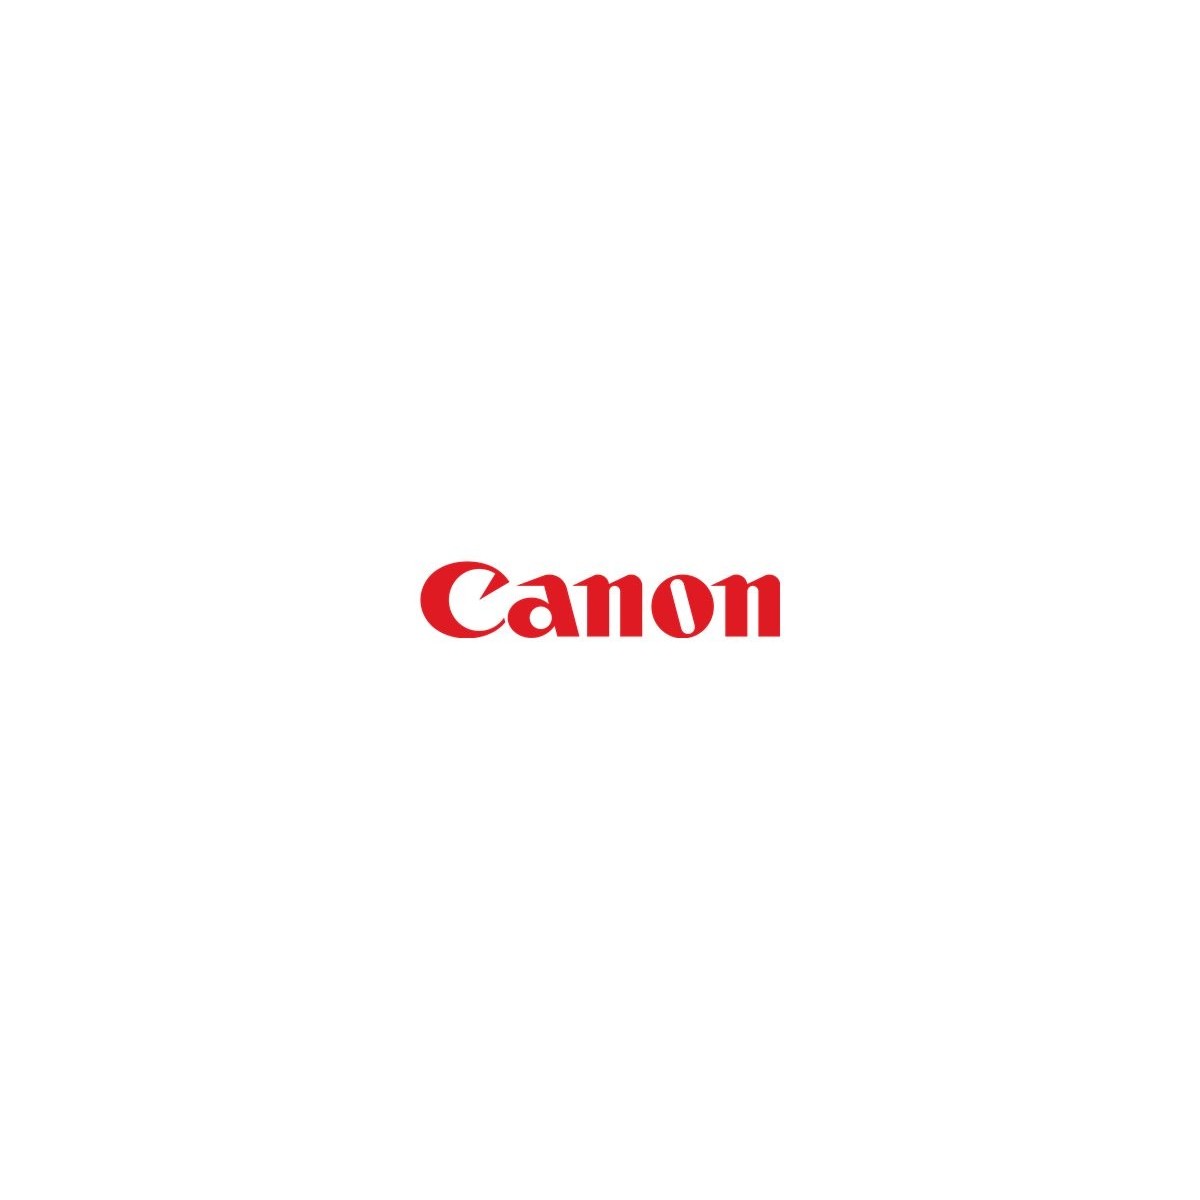 Canon C-EXV 30 - Original - C7055/7065/9060/9070 - 500000 pages - Laser printing - Black